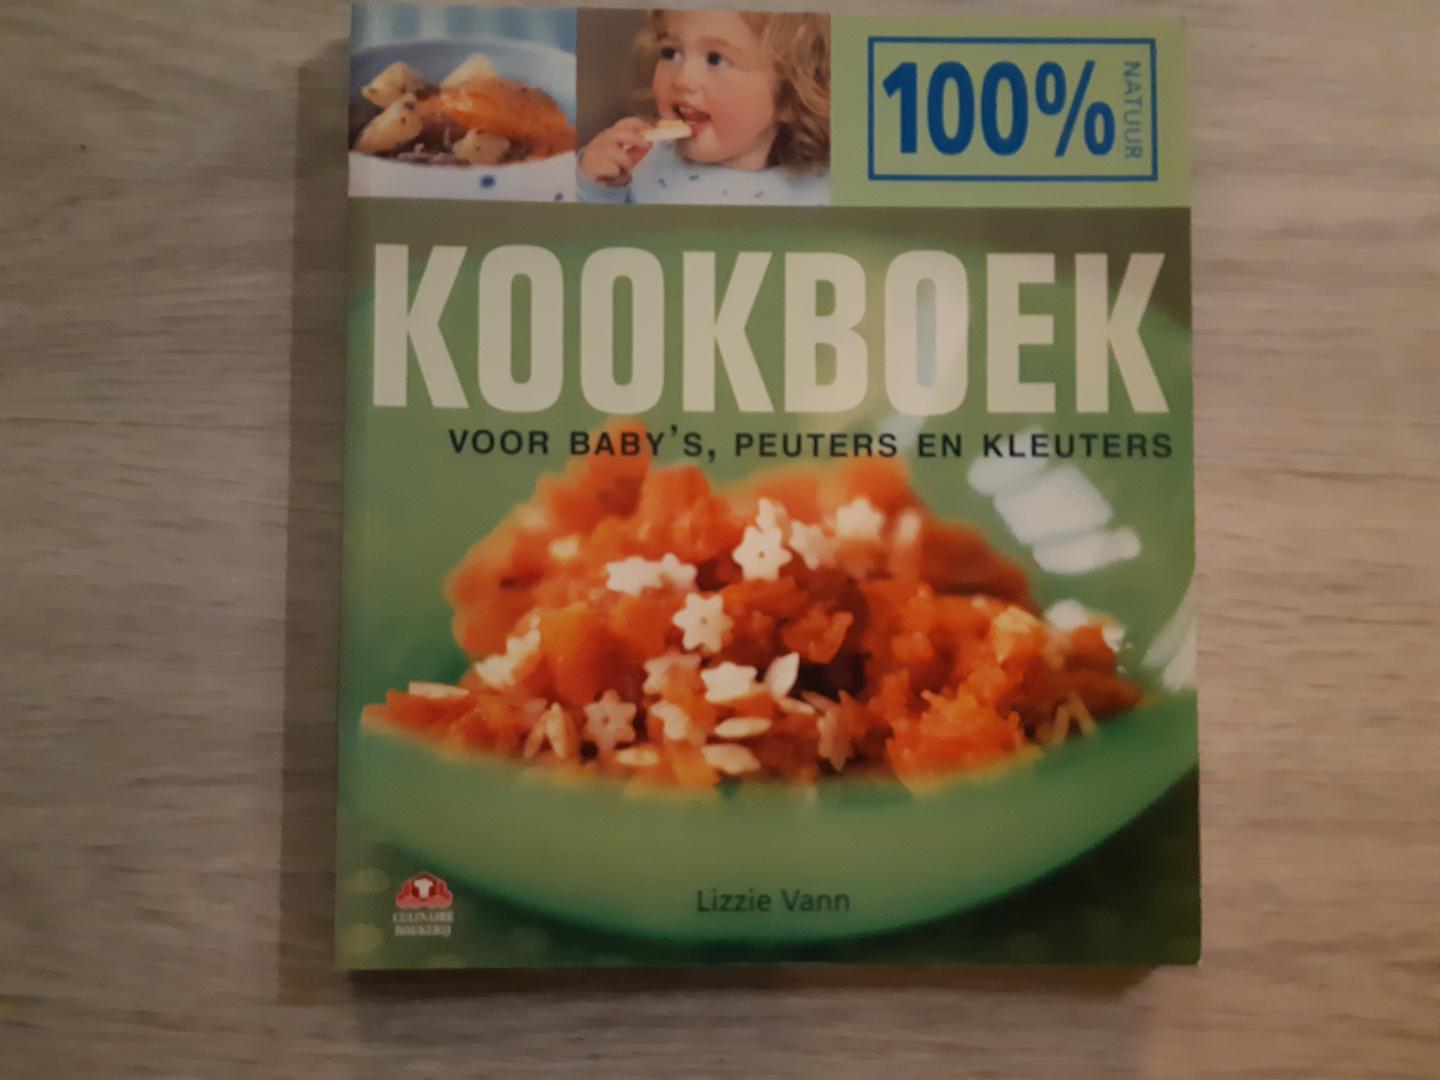 Vann, Lizzie - 100% natuur - Kookboek voor baby's, peuters en kleuters